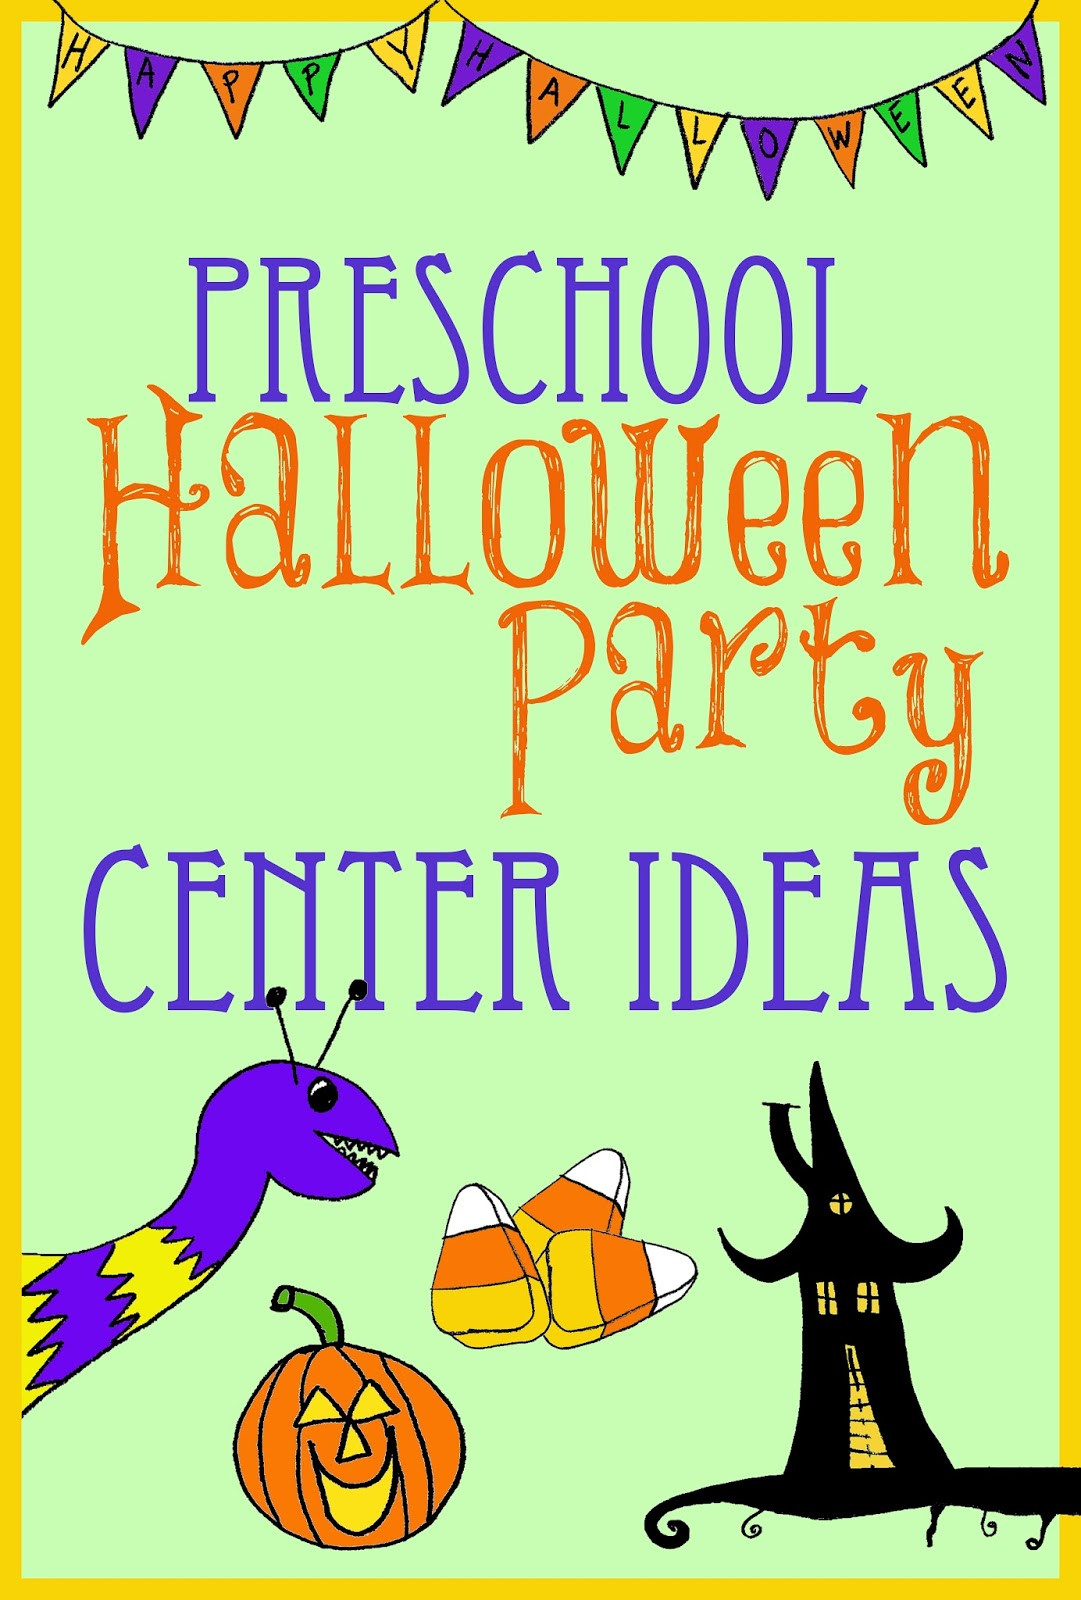 Halloween Party Ideas For Preschoolers
 Halloween Party Center Ideas for Preschool Kindergarten